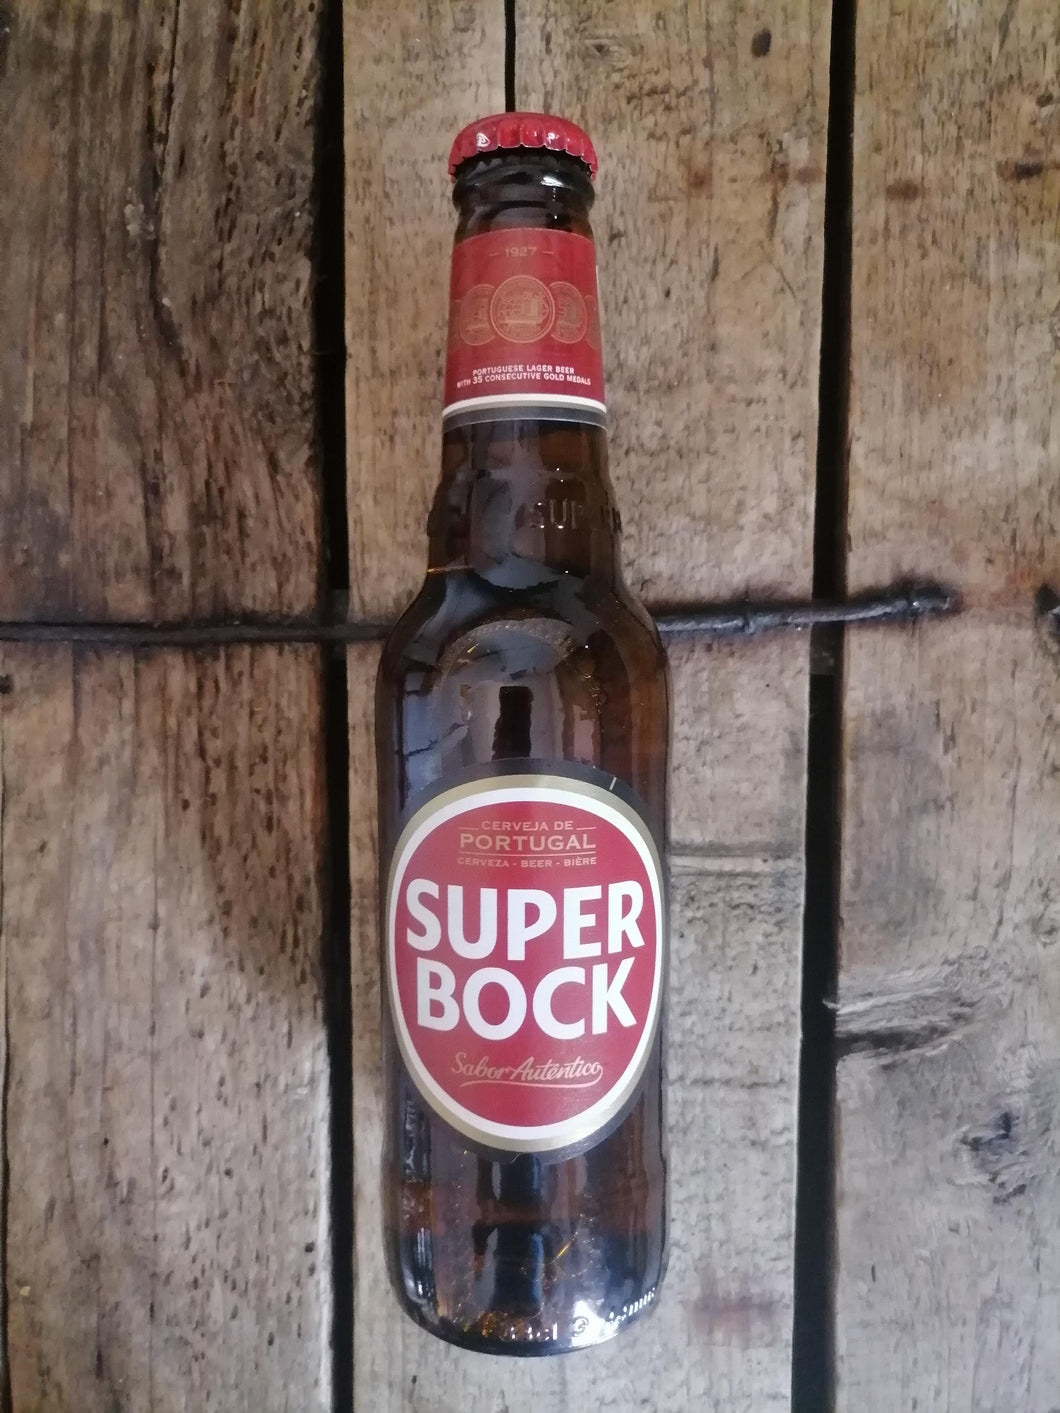 Super Bock 4.7% (330ml bottle)